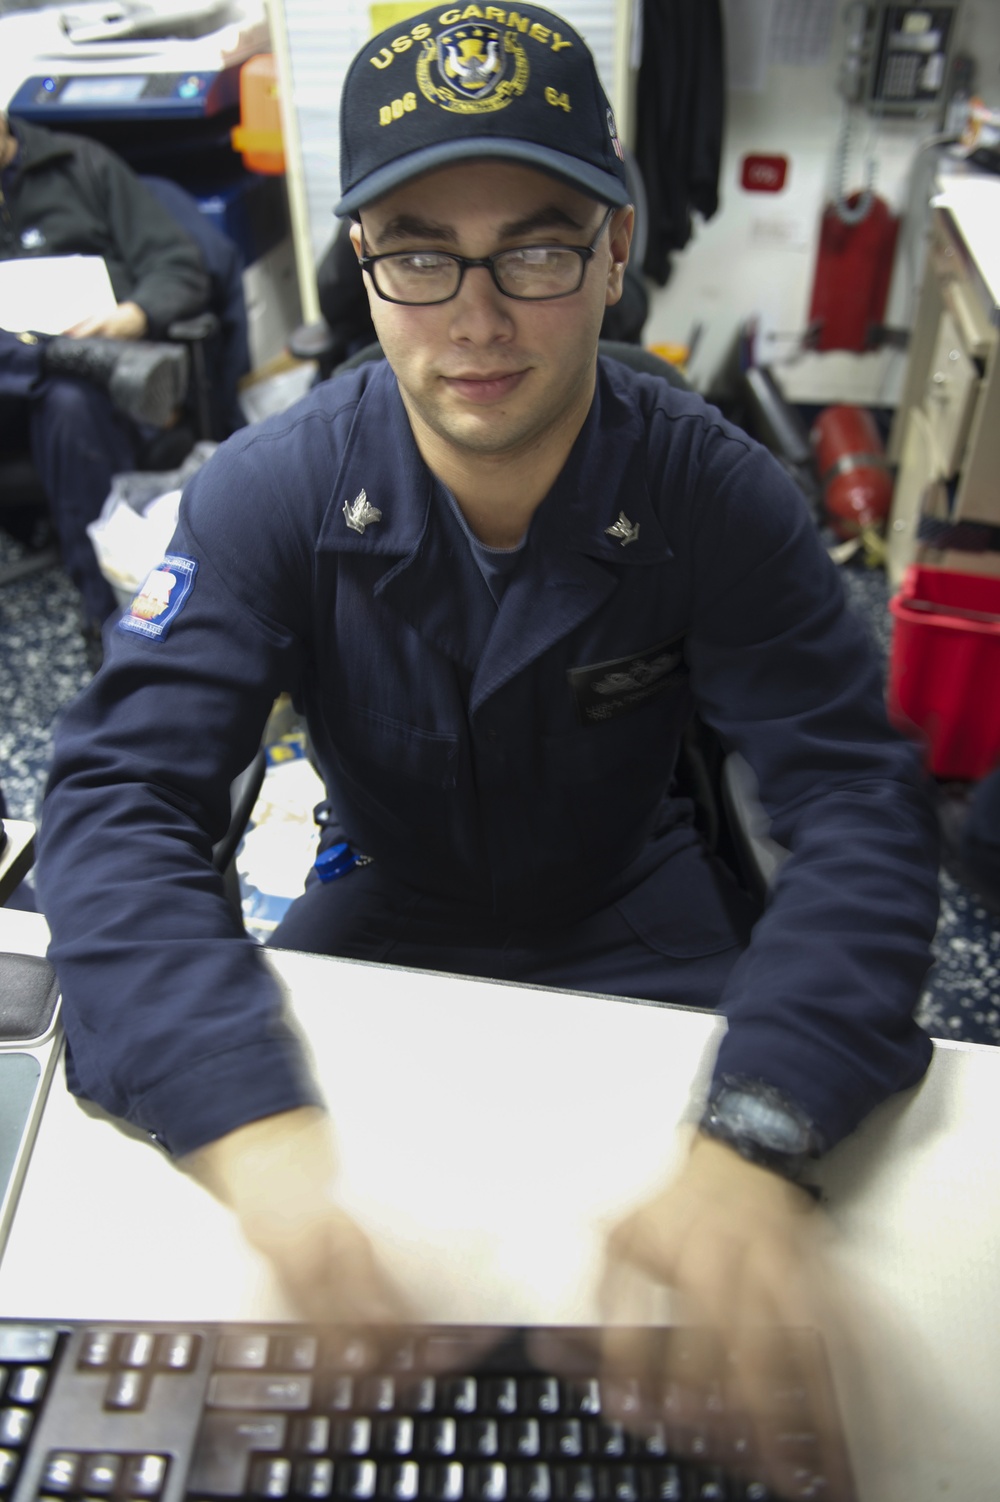 USS Carney sailors at work